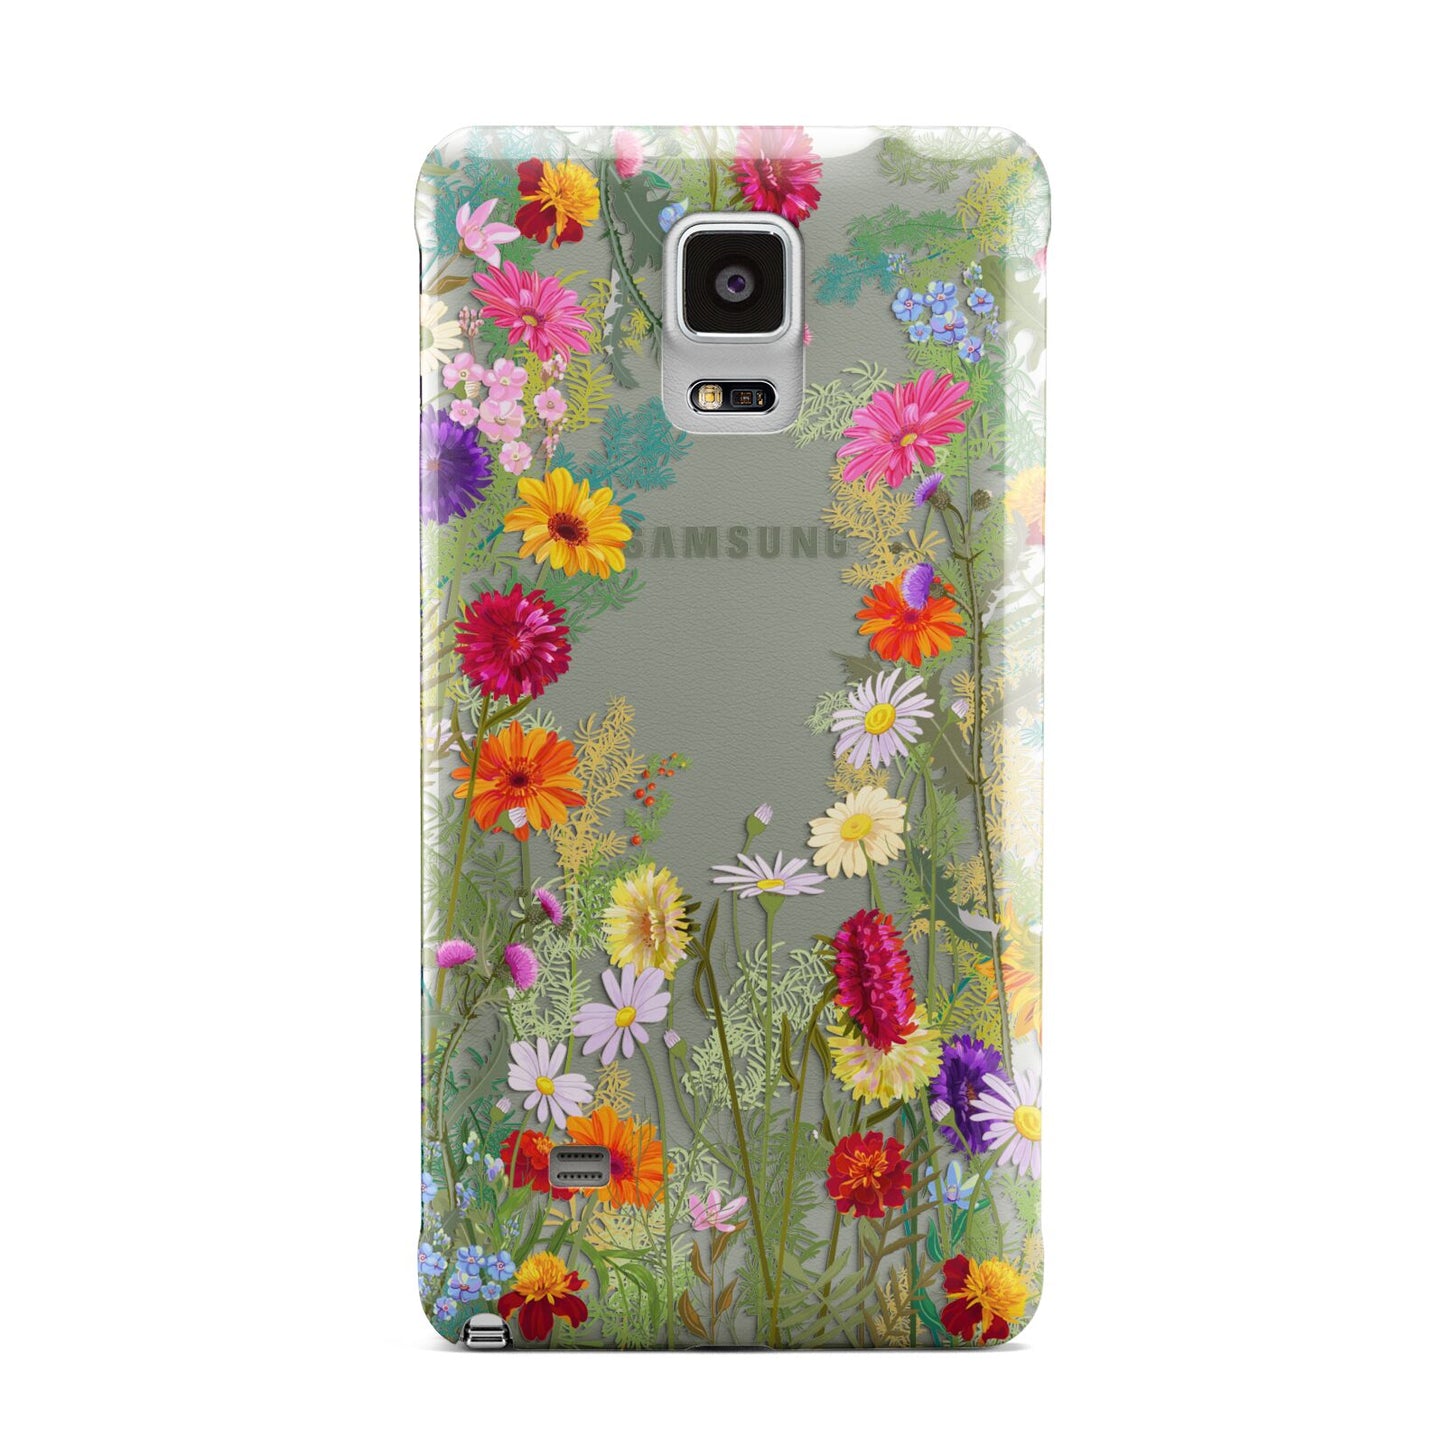 Wildflower Samsung Galaxy Note 4 Case